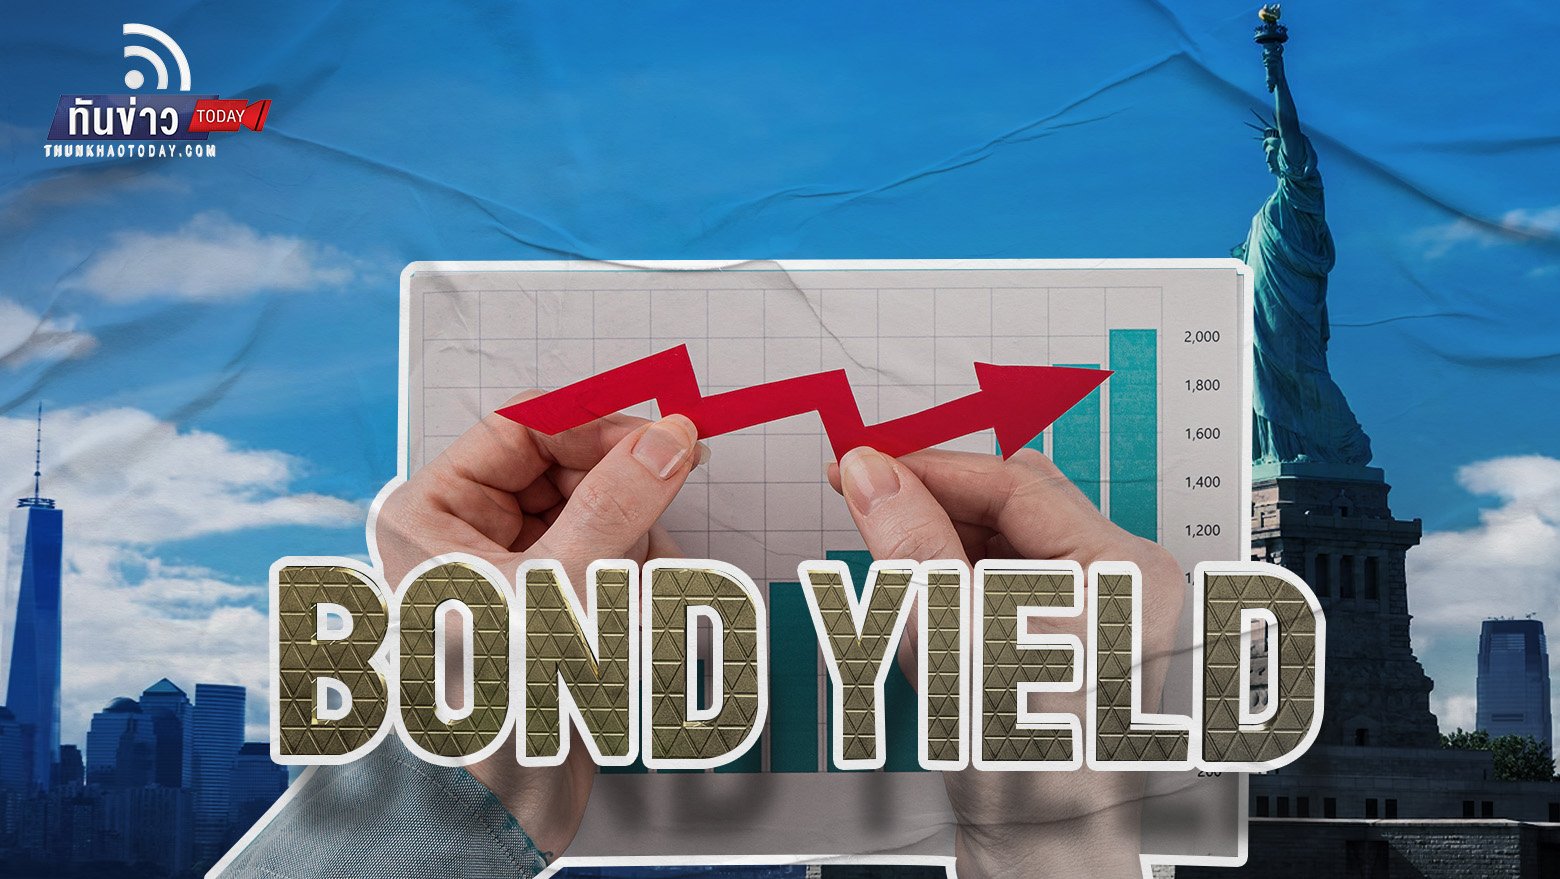 Bond Yield สหรัฐฯ พุ่งสูงสุดในรอบ 17 ปี หลัง Fed ส่งสัญญาณขึ้นดอกเบี้ย